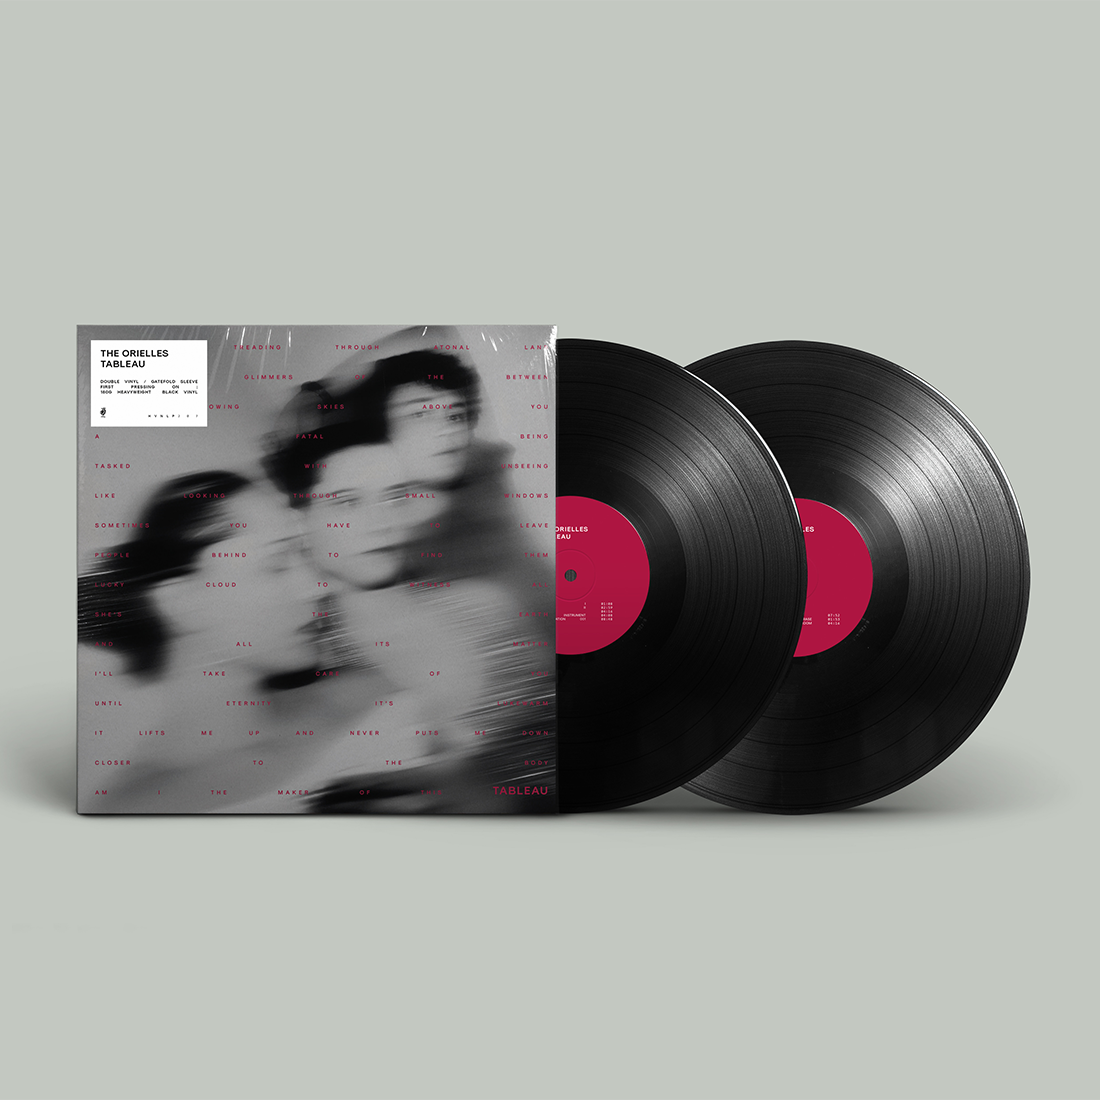 The Orielles - Tableau: Vinyl 2LP - Sound of Vinyl